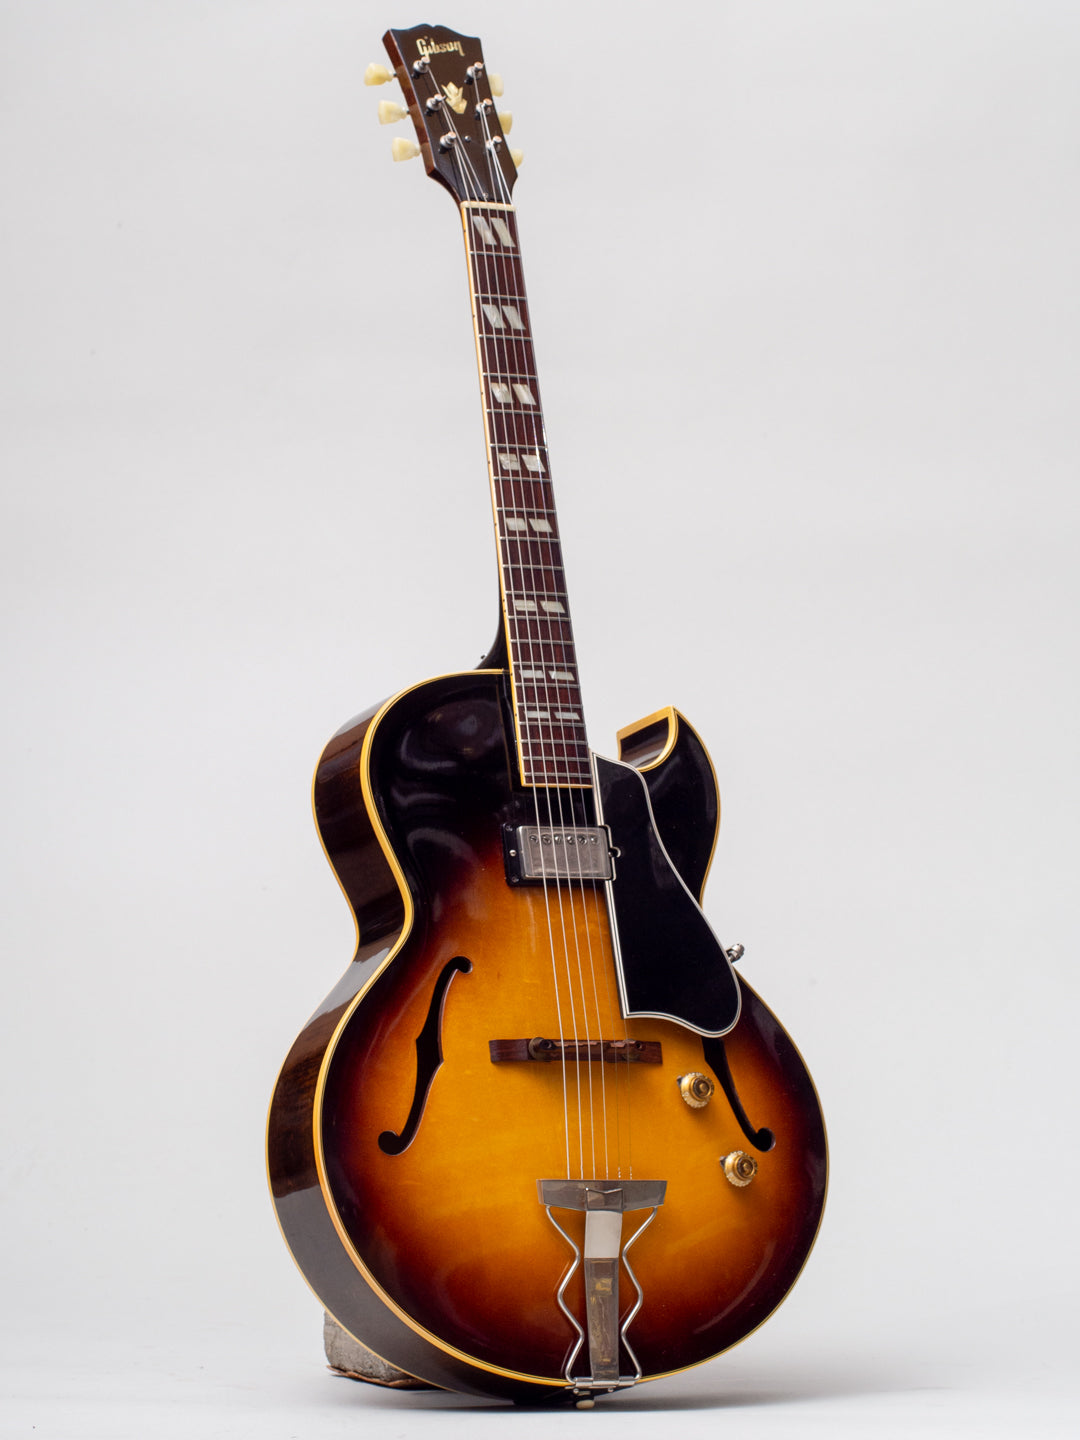 1957 Gibson ES-175